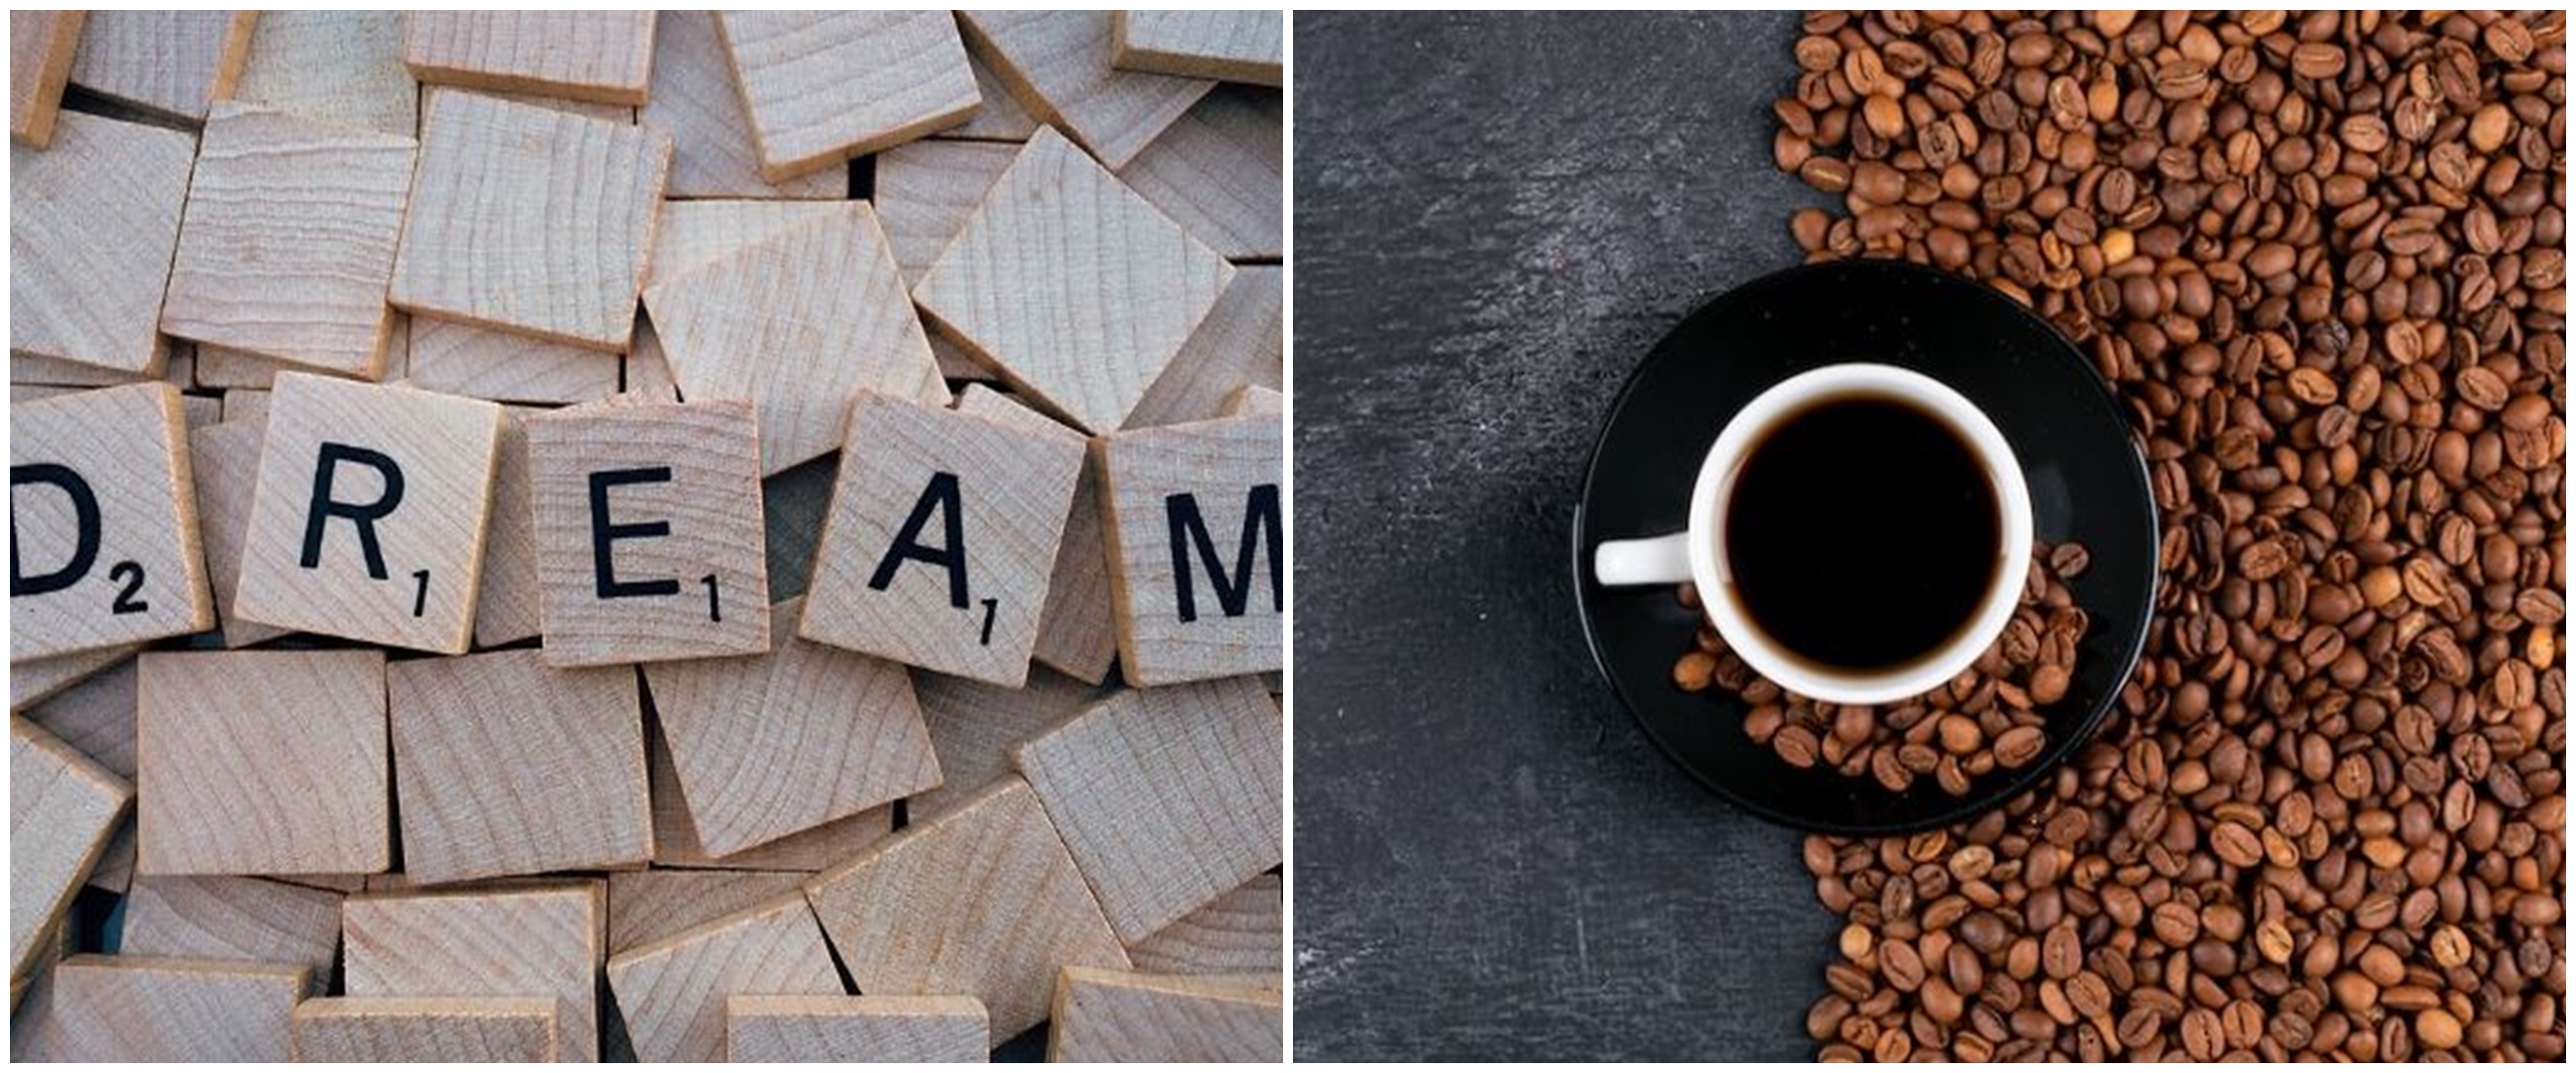 10 Arti mimpi tentang kopi menurut primbon, gambaran kondisi kesehatan